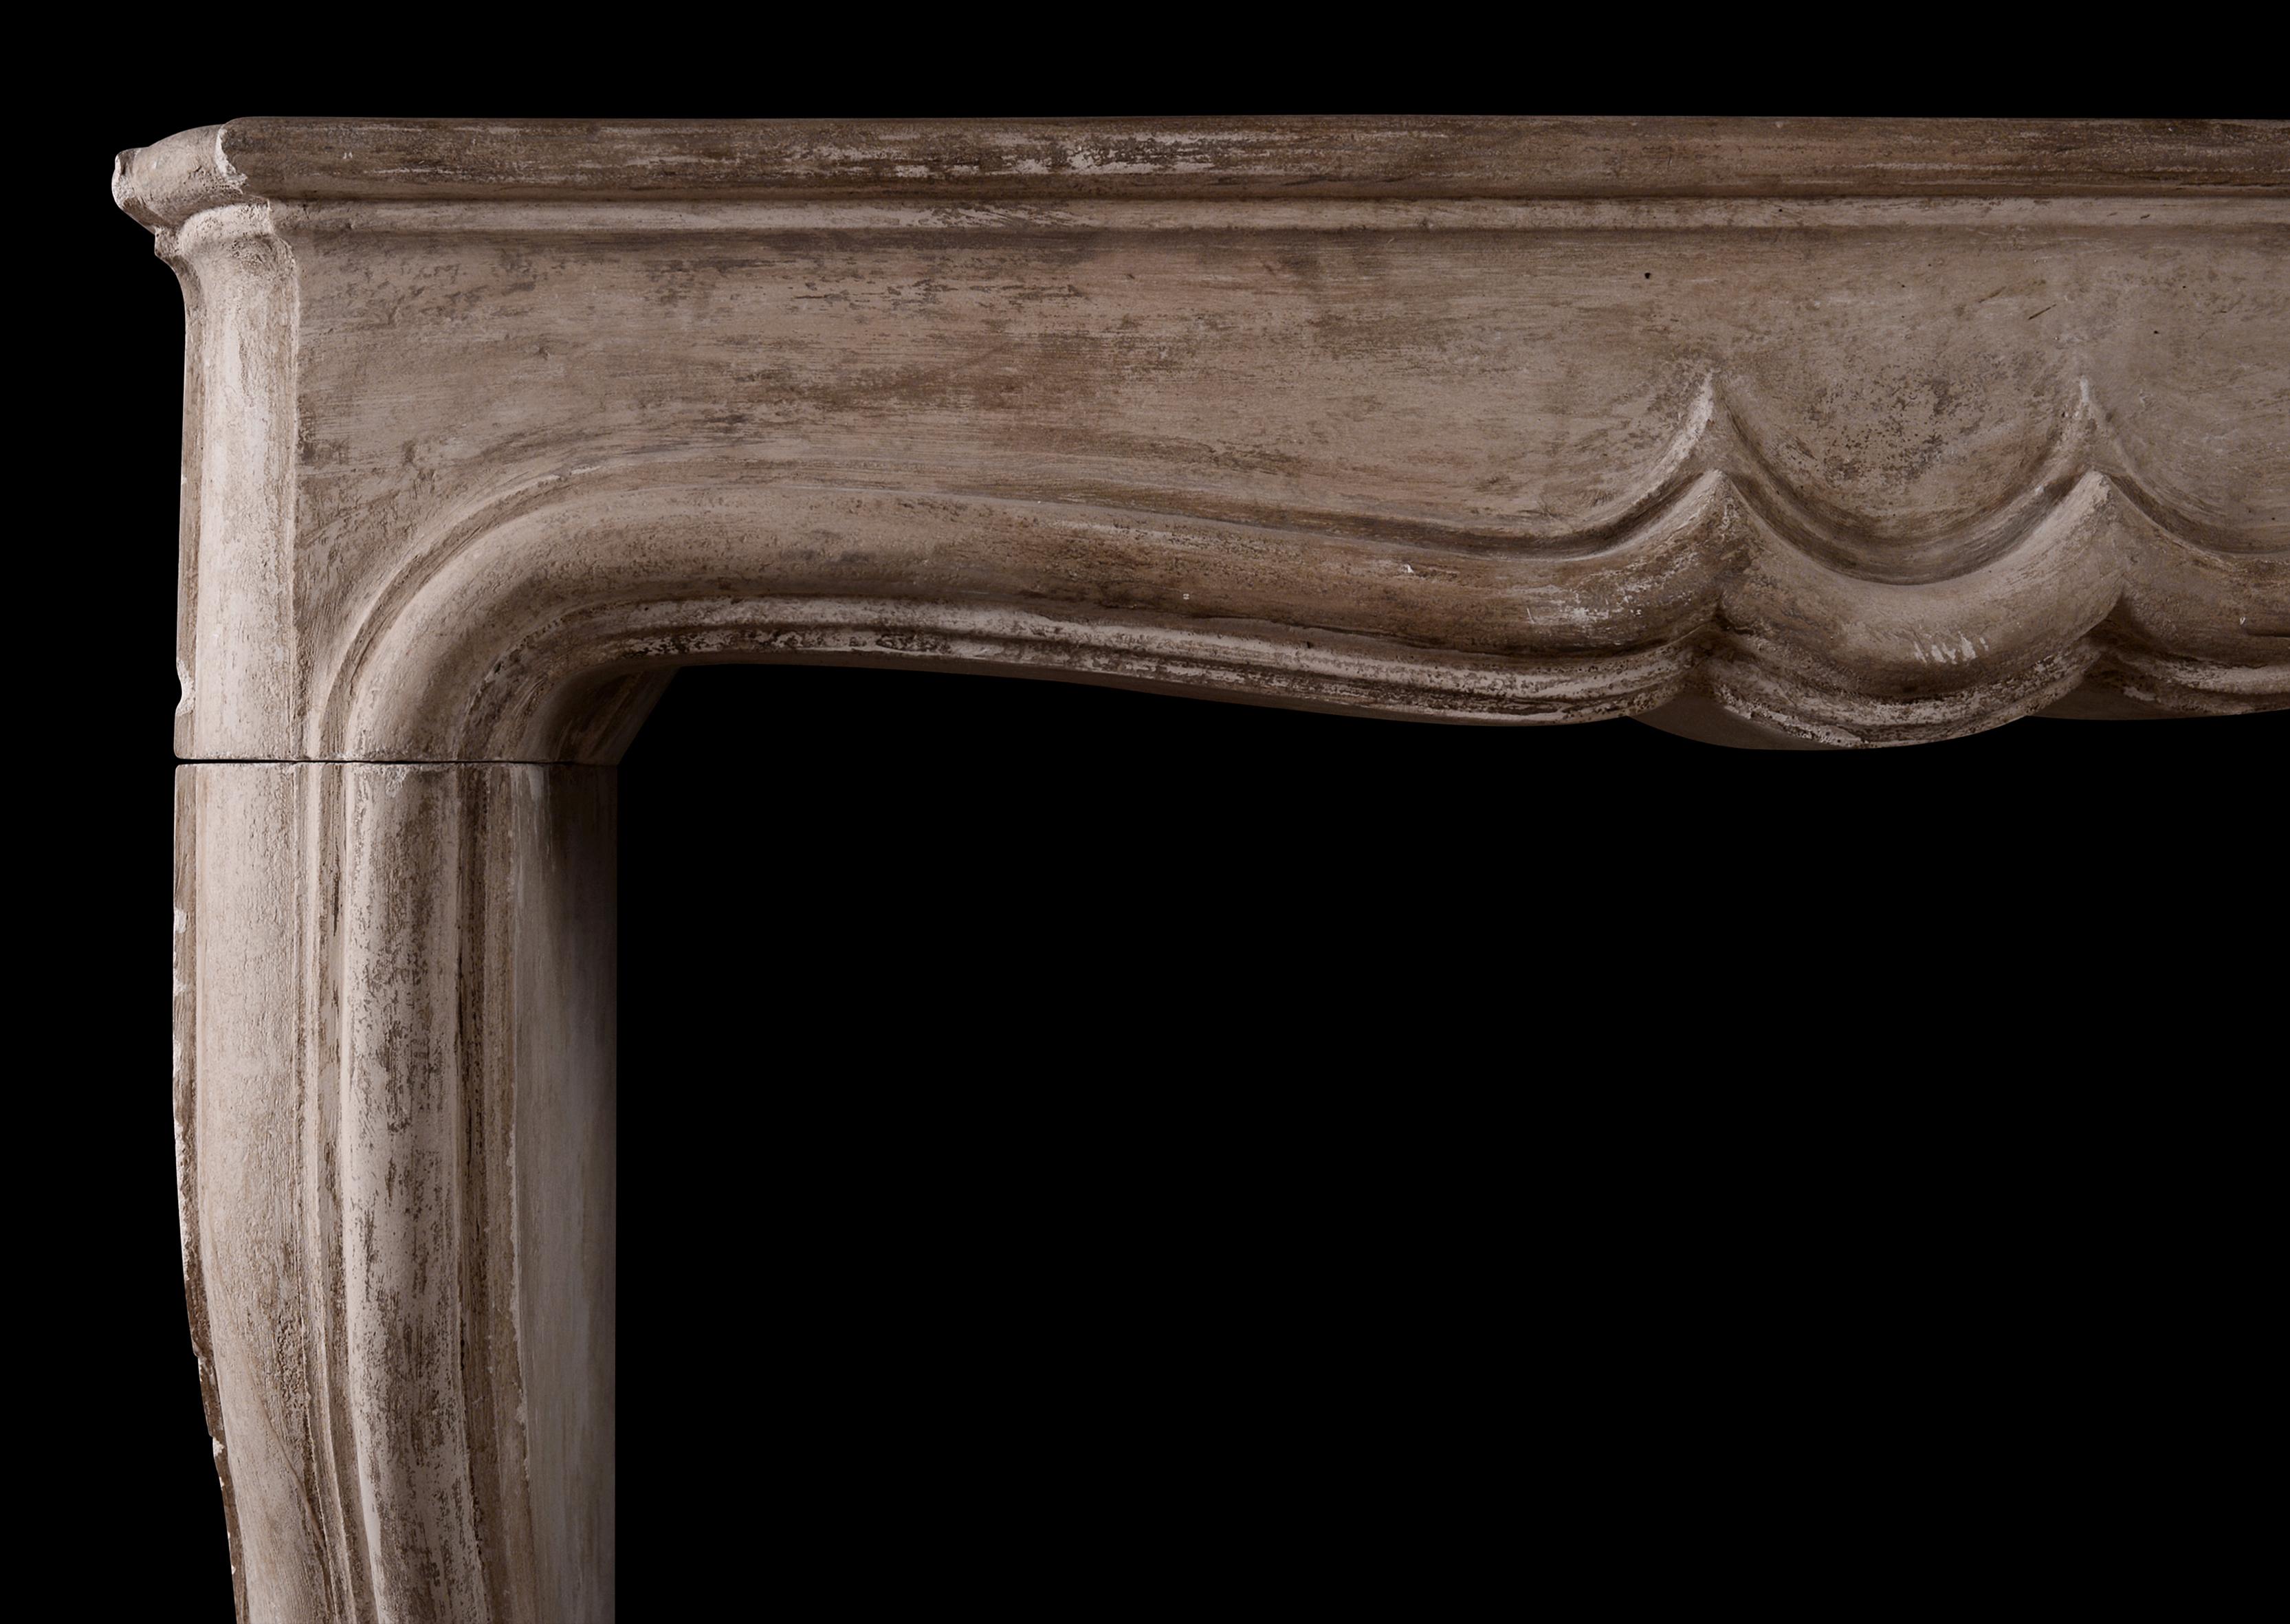 Ein französischer Louis-XIV-Steinkamin aus dem 18. Jahrhundert. Die profilierten Pfosten werden von einem elegant geformten Fries und einem Regal gekrönt. Noch in der ursprünglichen Tiefe, kann aber bei Bedarf reduziert werden.

Maße: Regalbreite: